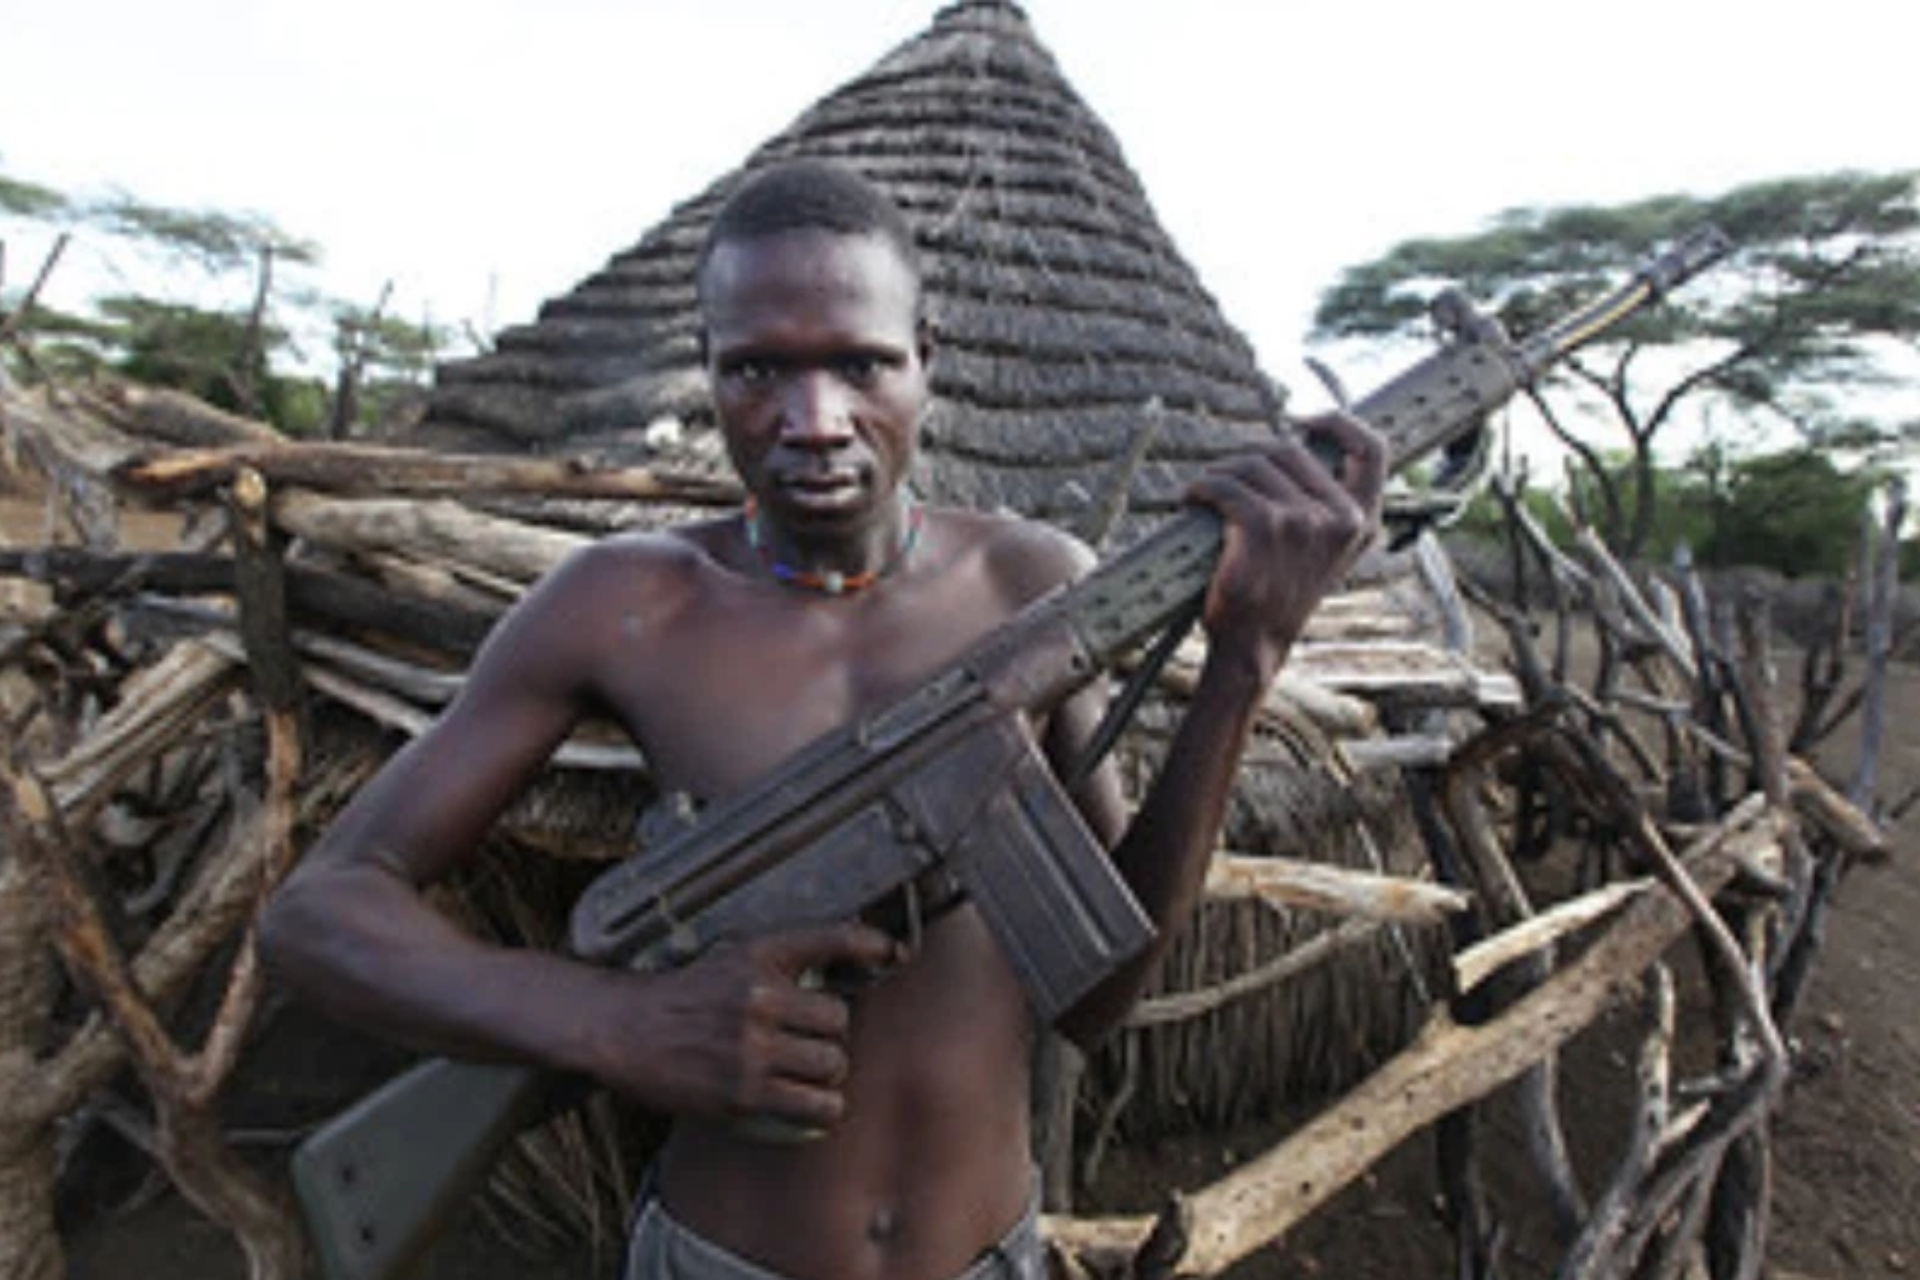 Sudan civil war